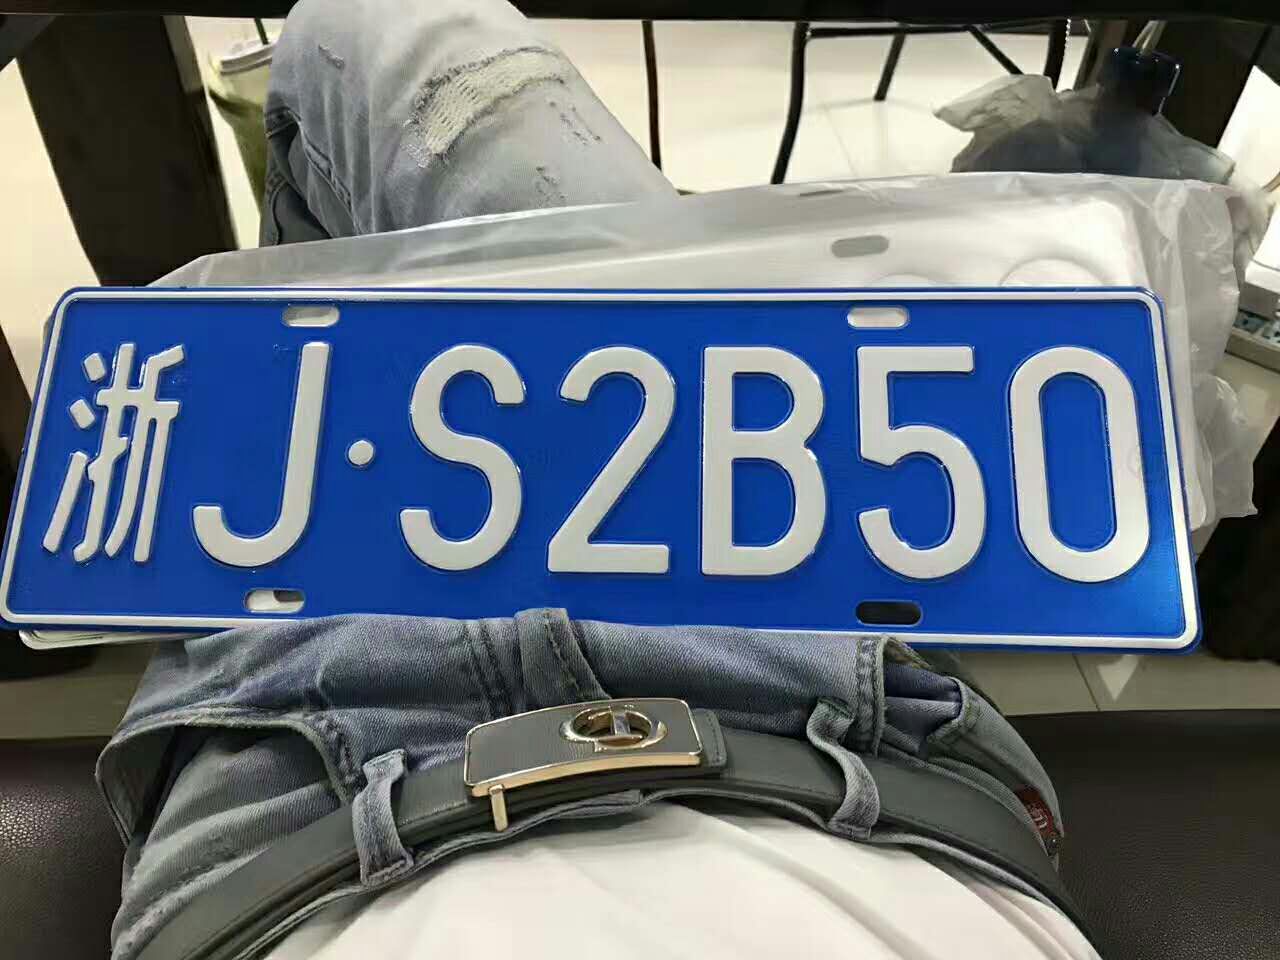 浙jb35cm车牌照图片